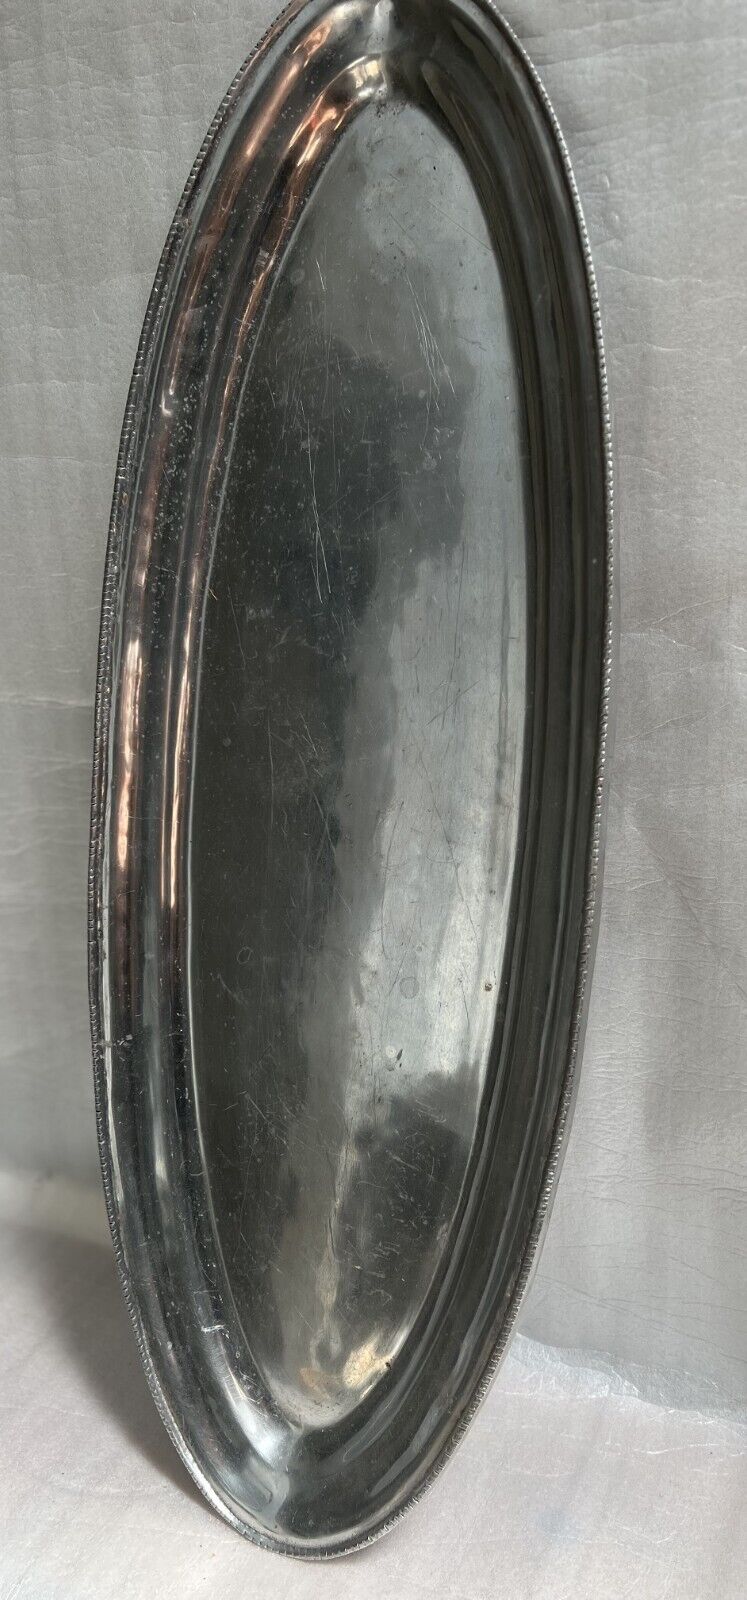 Vintage Large Oval Heavy Serving Platter